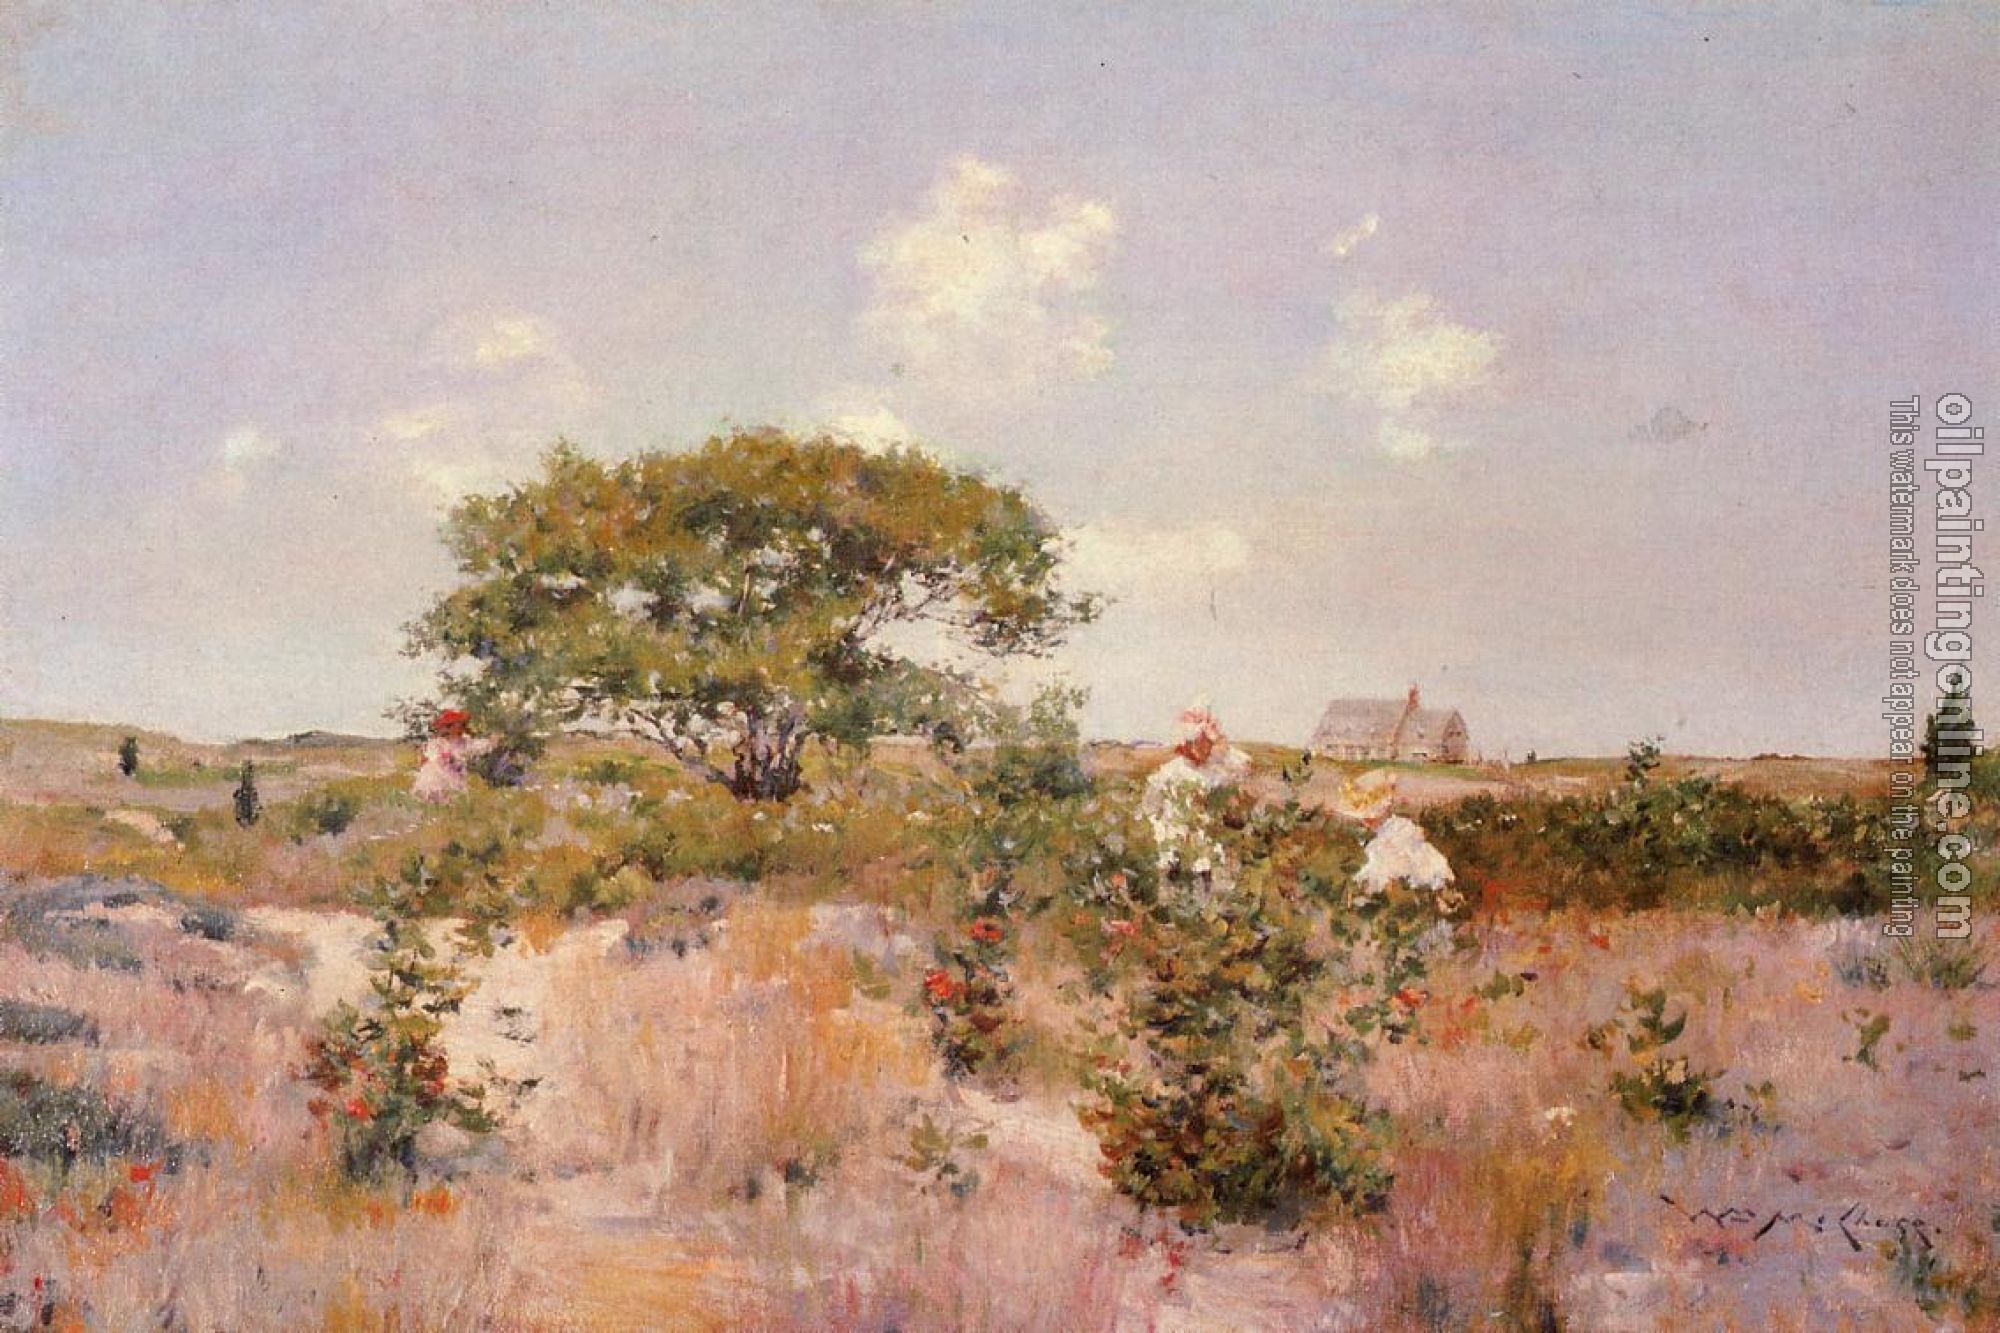 Chase, William Merritt - Shinnecock Landscape c1892